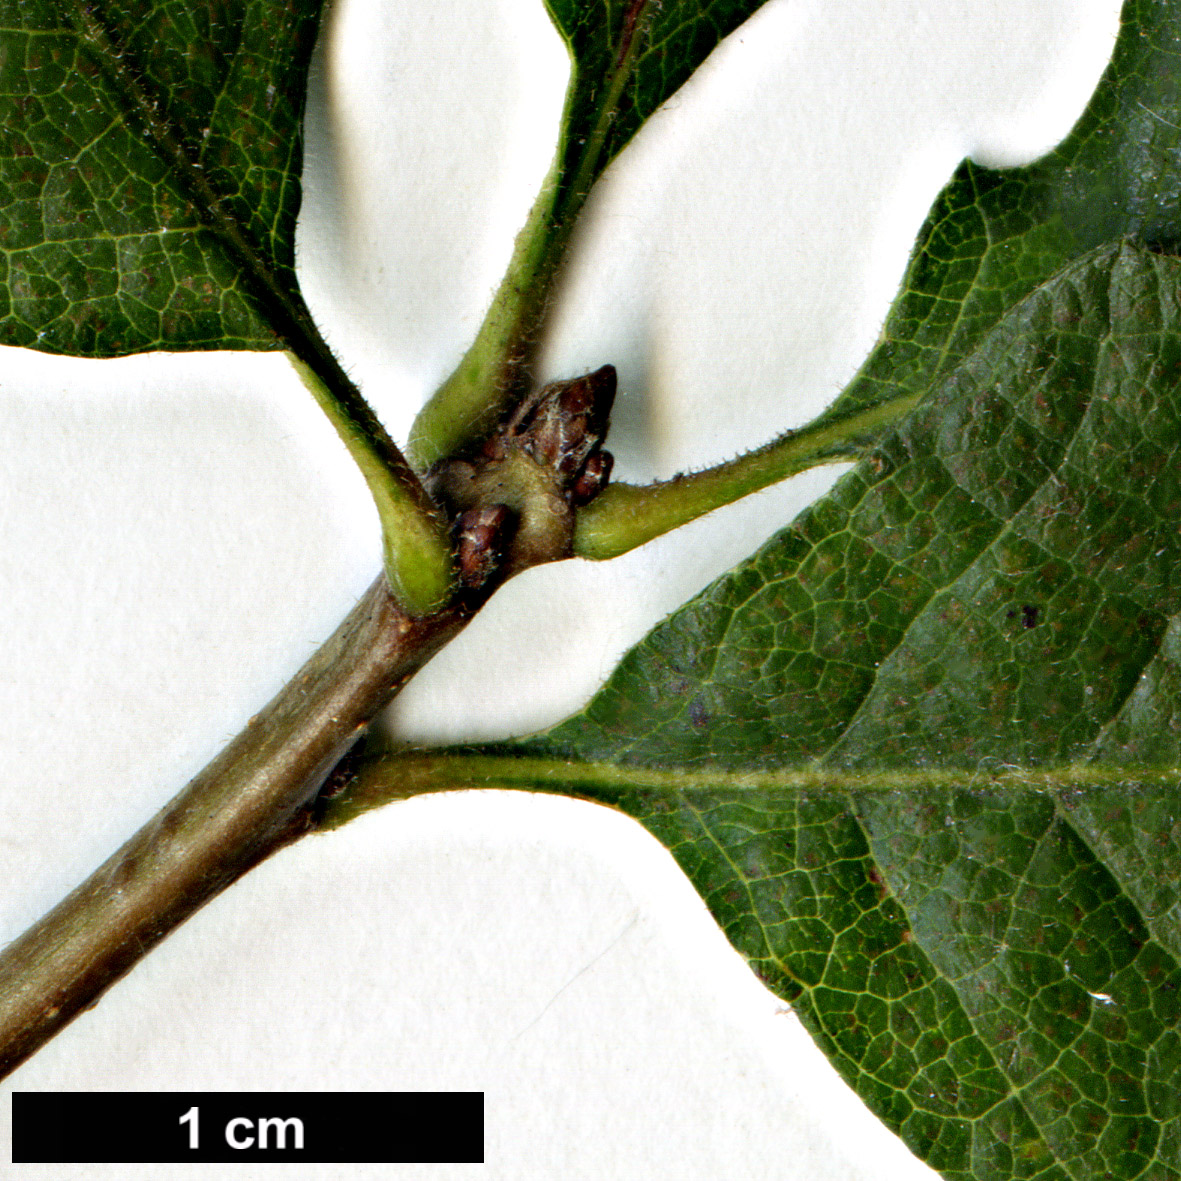 High resolution image: Family: Fagaceae - Genus: Quercus - Taxon: lobata